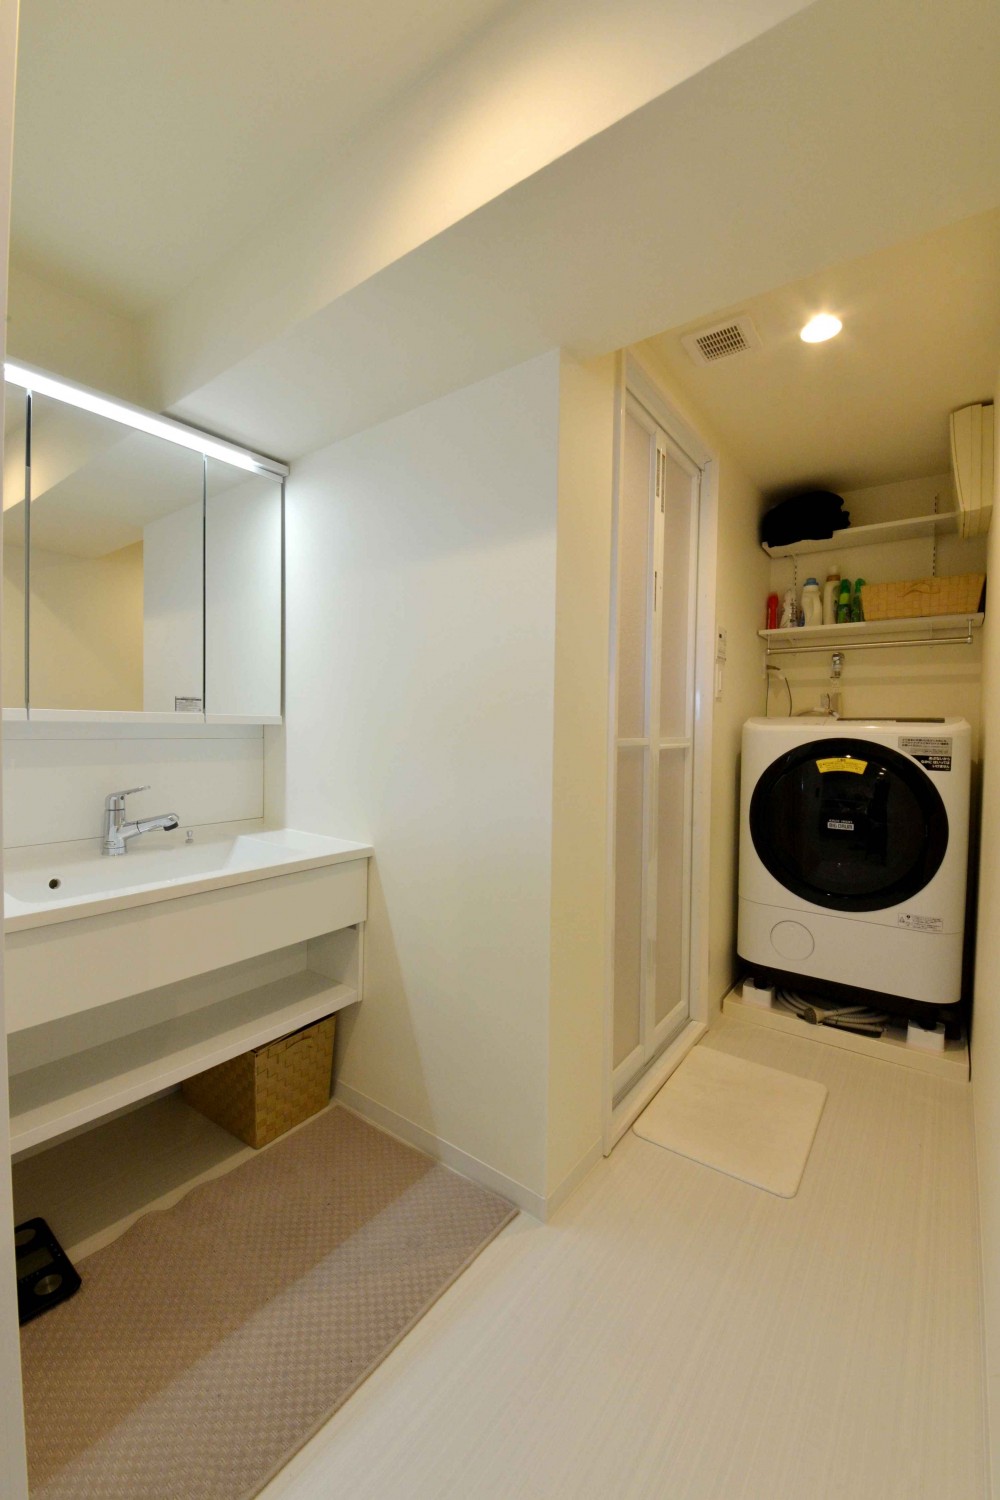 沖縄の情趣を感じられるマンションリノベーション (ゆとりのある洗面脱衣室)